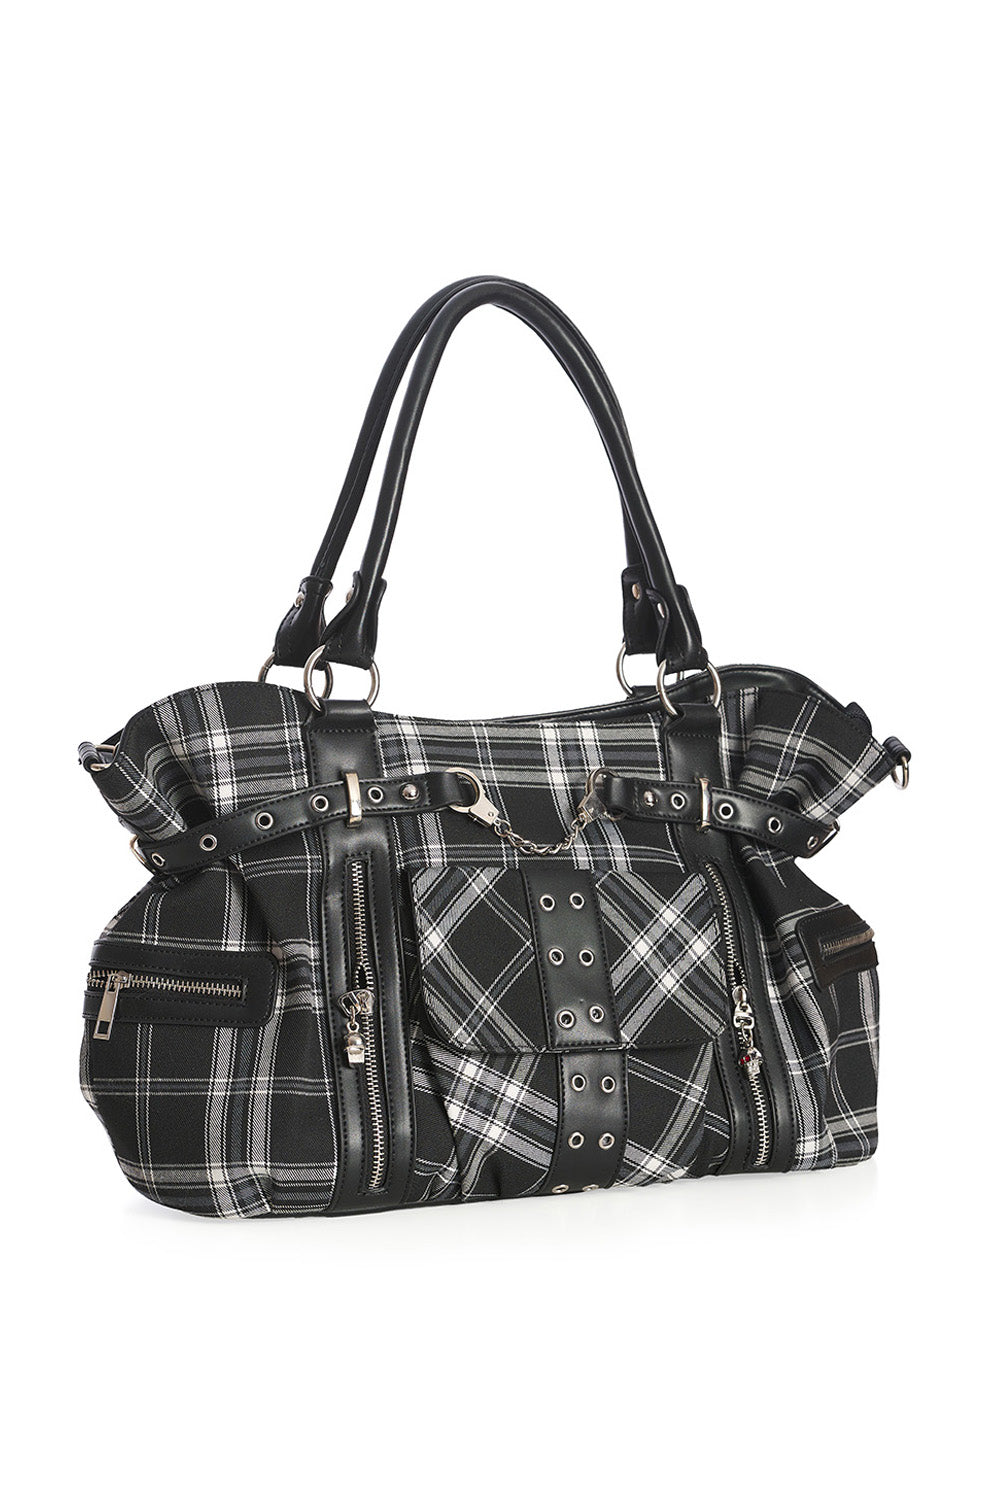 Schwarz-weiß-karierte Handtasche BLACK/WHITE RISE UP BAG mit Handschellendetail und Seitentaschen von Banned